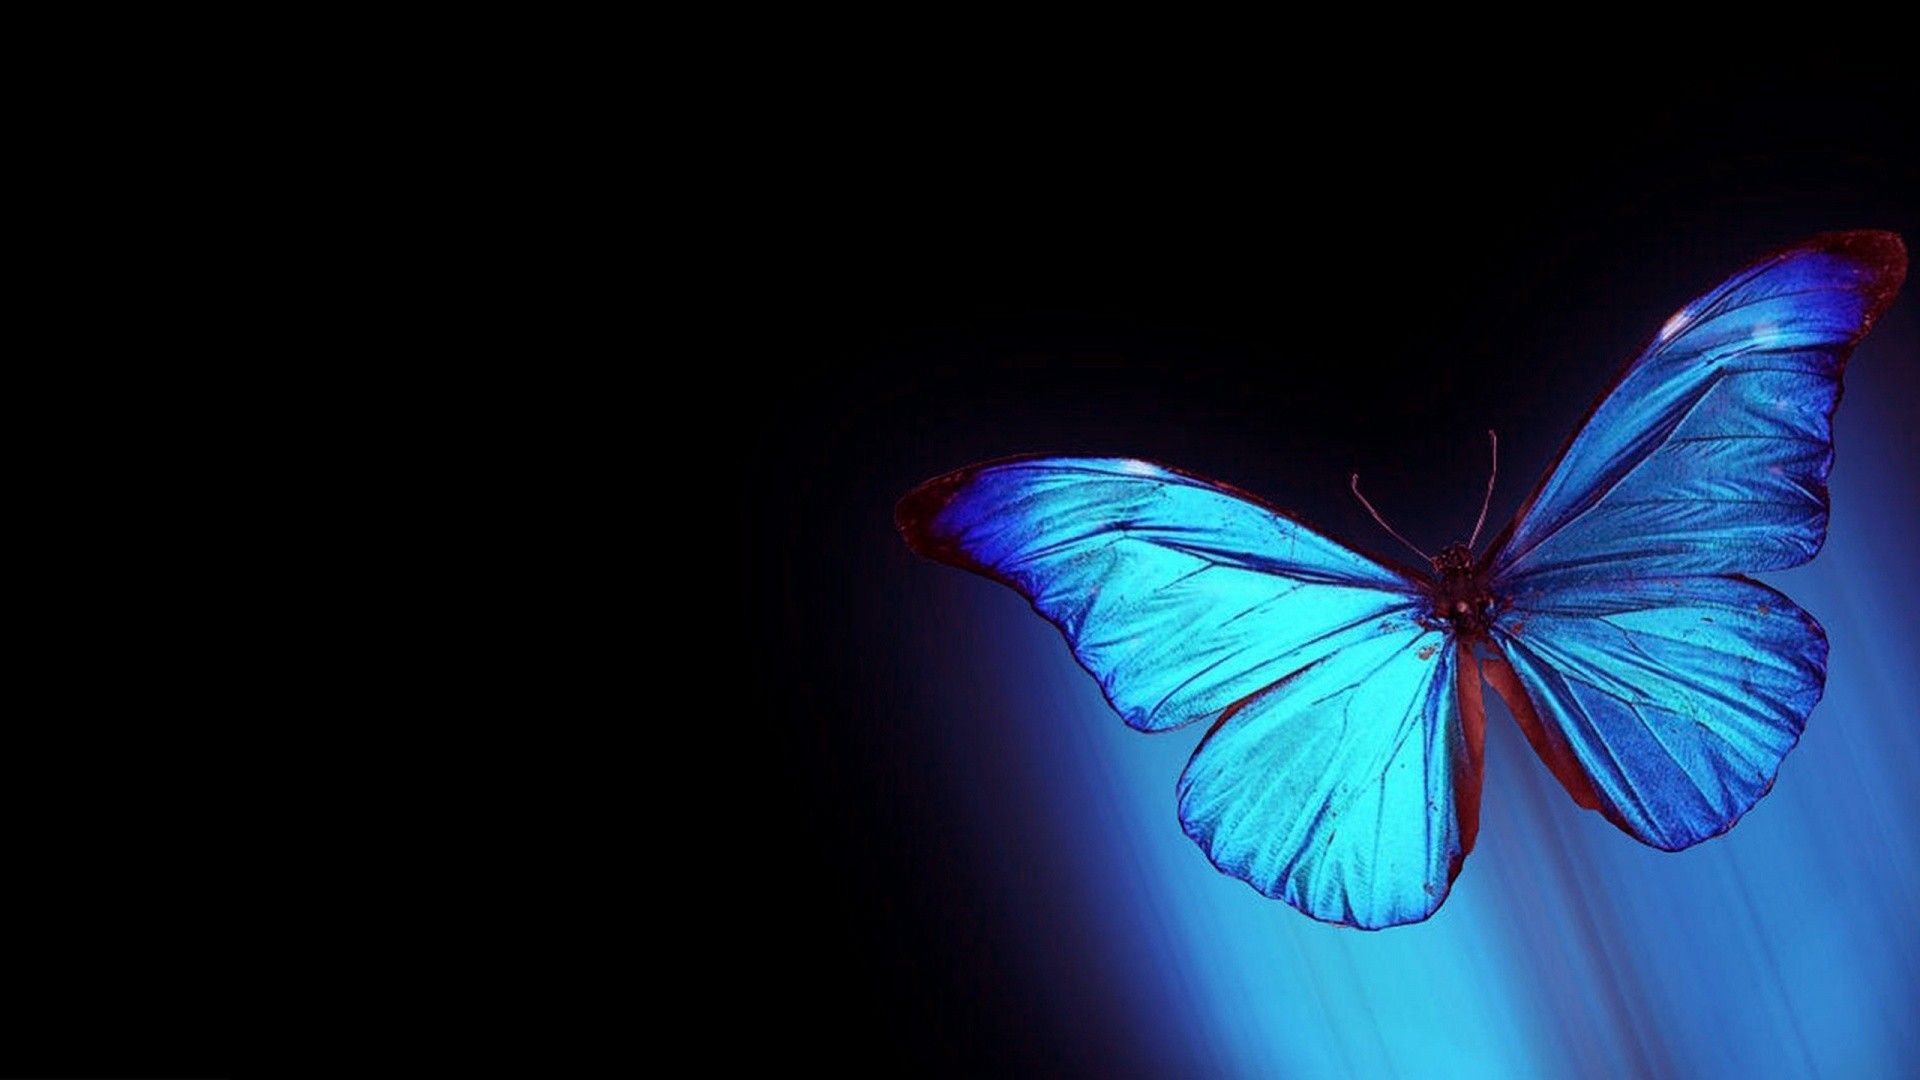 Butterfly desktop s on